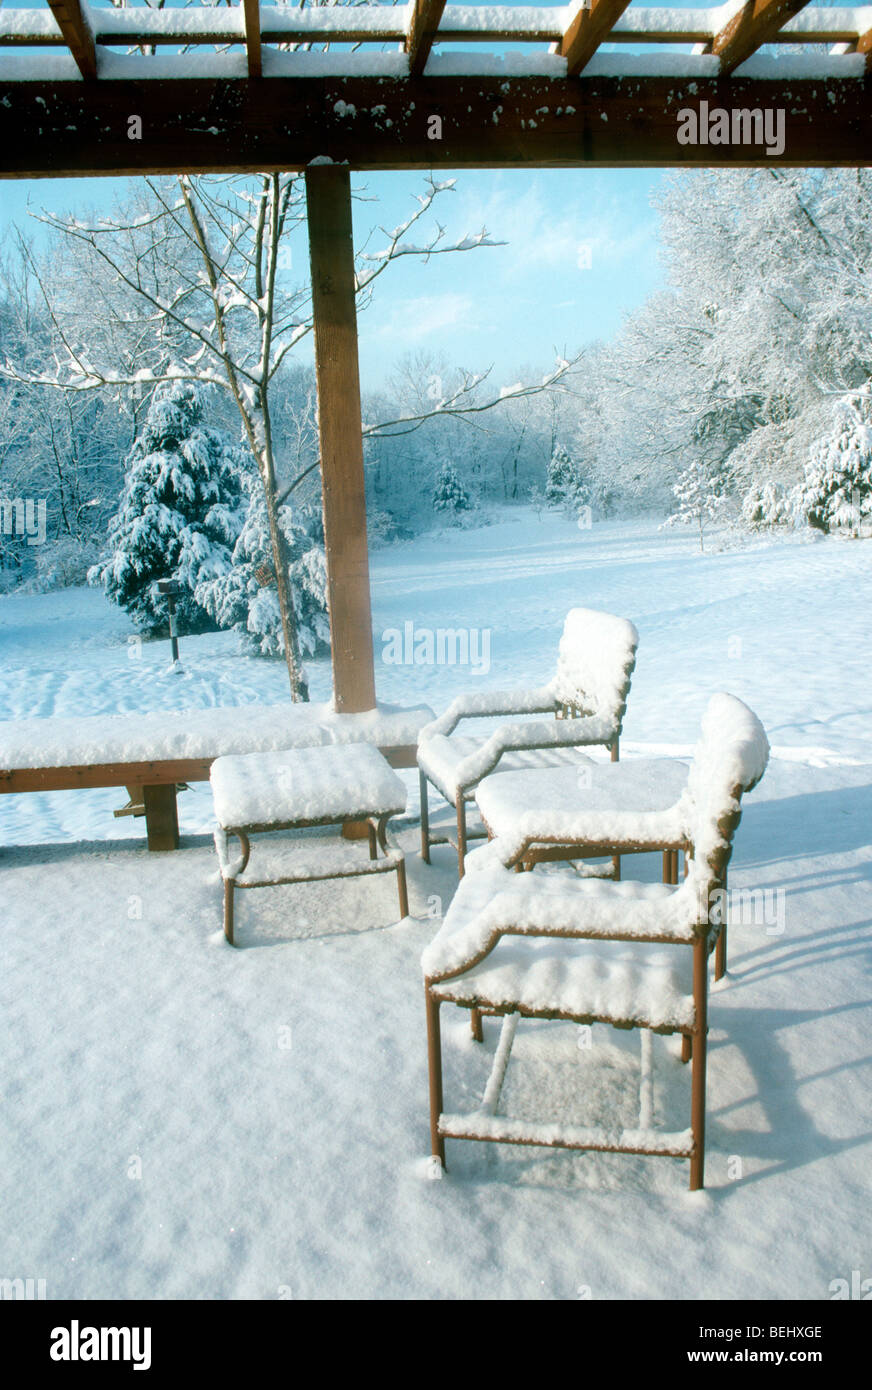 Neue Schnee auf Deck und Gartenmöbel im Winter Morgenlicht leuchtende besdie das Haus, Midwest USA Stockfoto